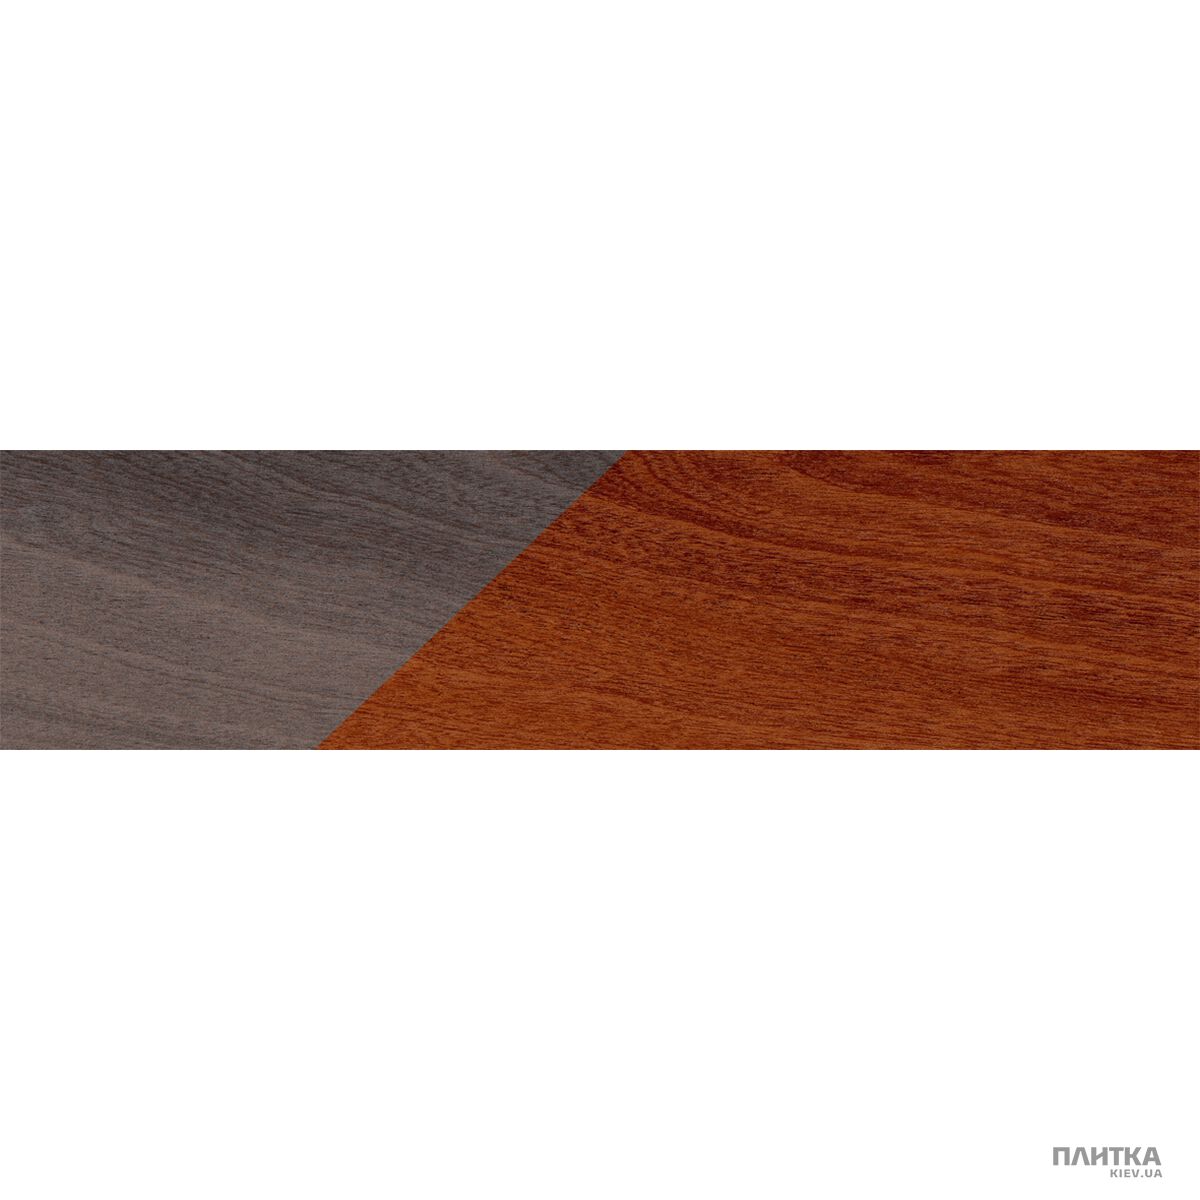 Керамогранит Marca Corona Essences D761 Esn. Mahogany Decor (sogg. mix) коричневый